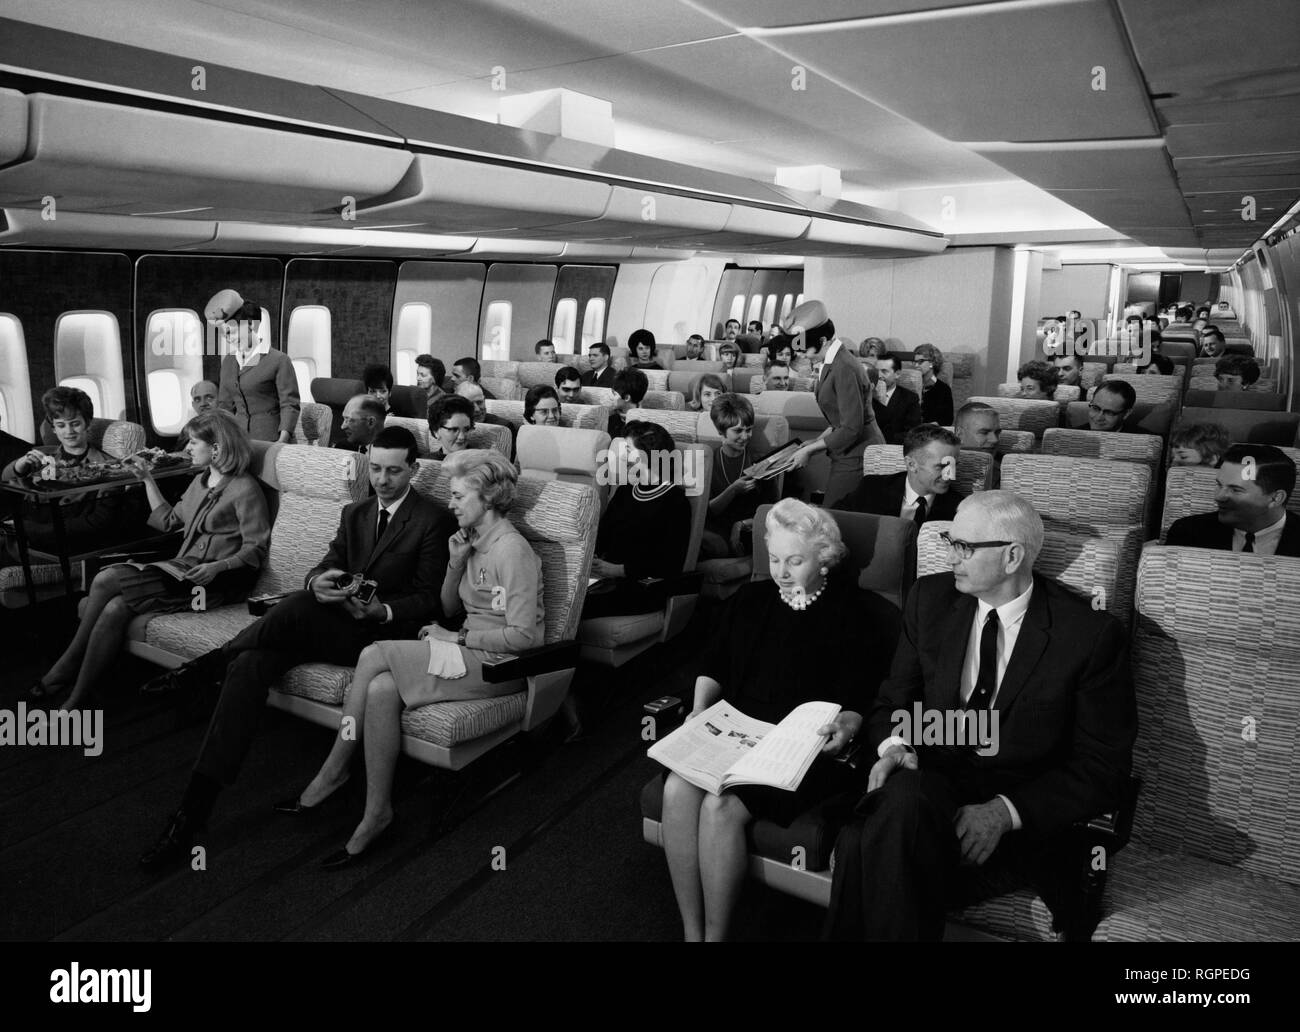 Les passagers d'un jumbo jet, 1960 Banque D'Images